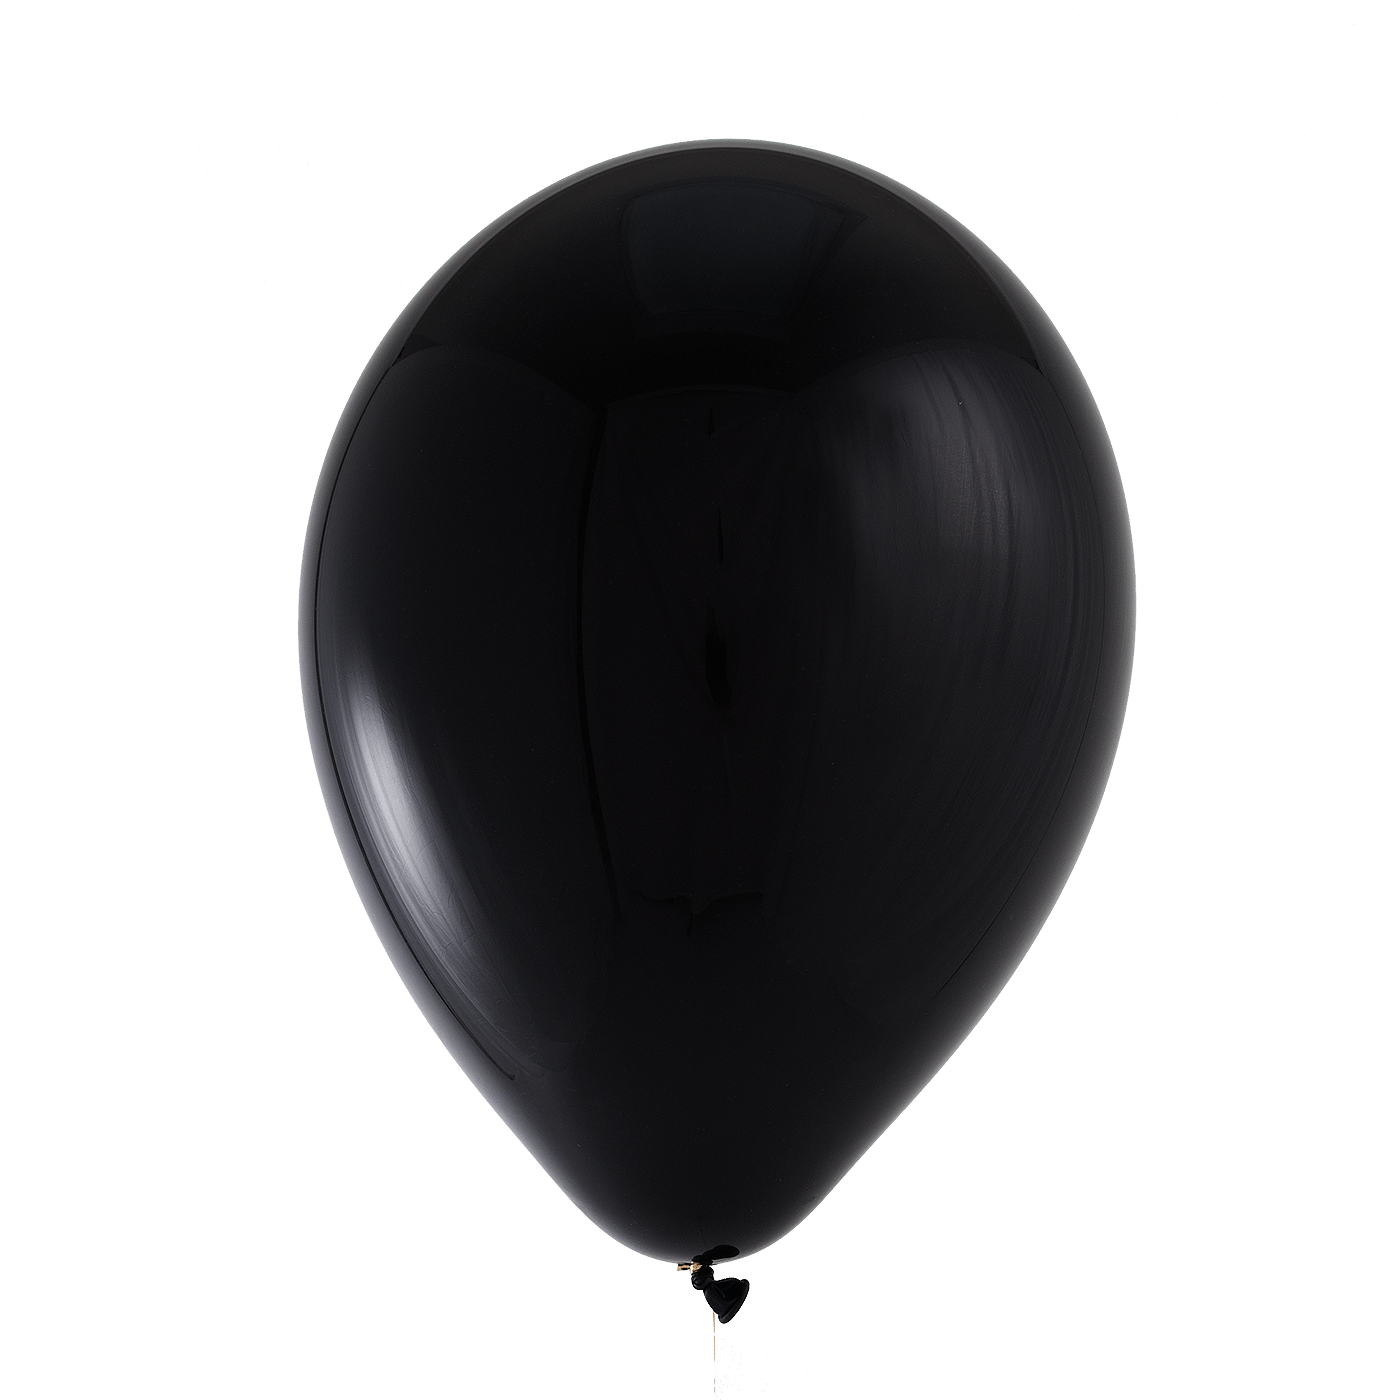 Блэк шару. “Черный шар” (the Black Balloon), 2008. Черный воздушный шар. Белый шар на черном фоне. Черный шар без фона.